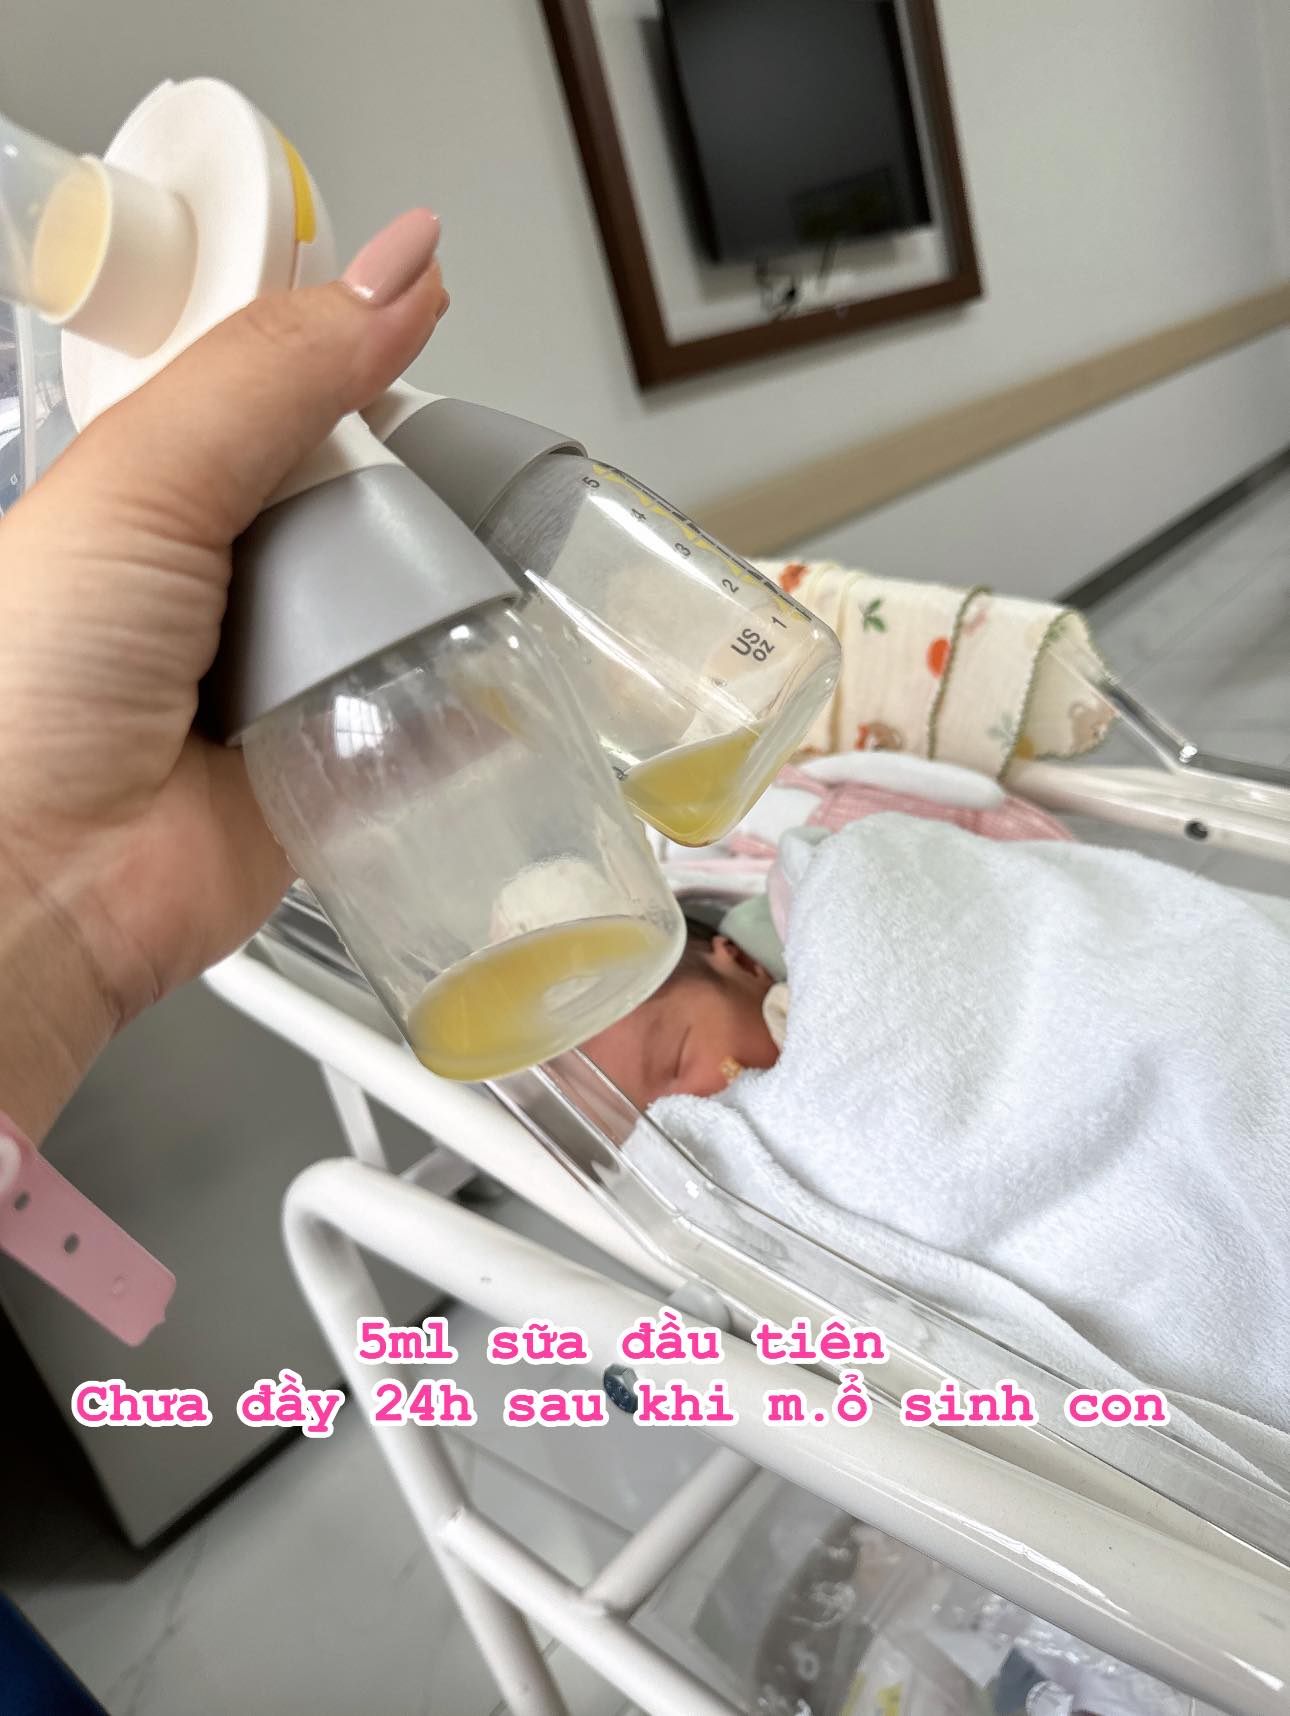 Sinh con chưa được bao lâu, diễn viên Thu Quỳnh phải cách ly bé, đổ đi cả lít sữa mẹ vì điều này- Ảnh 4.